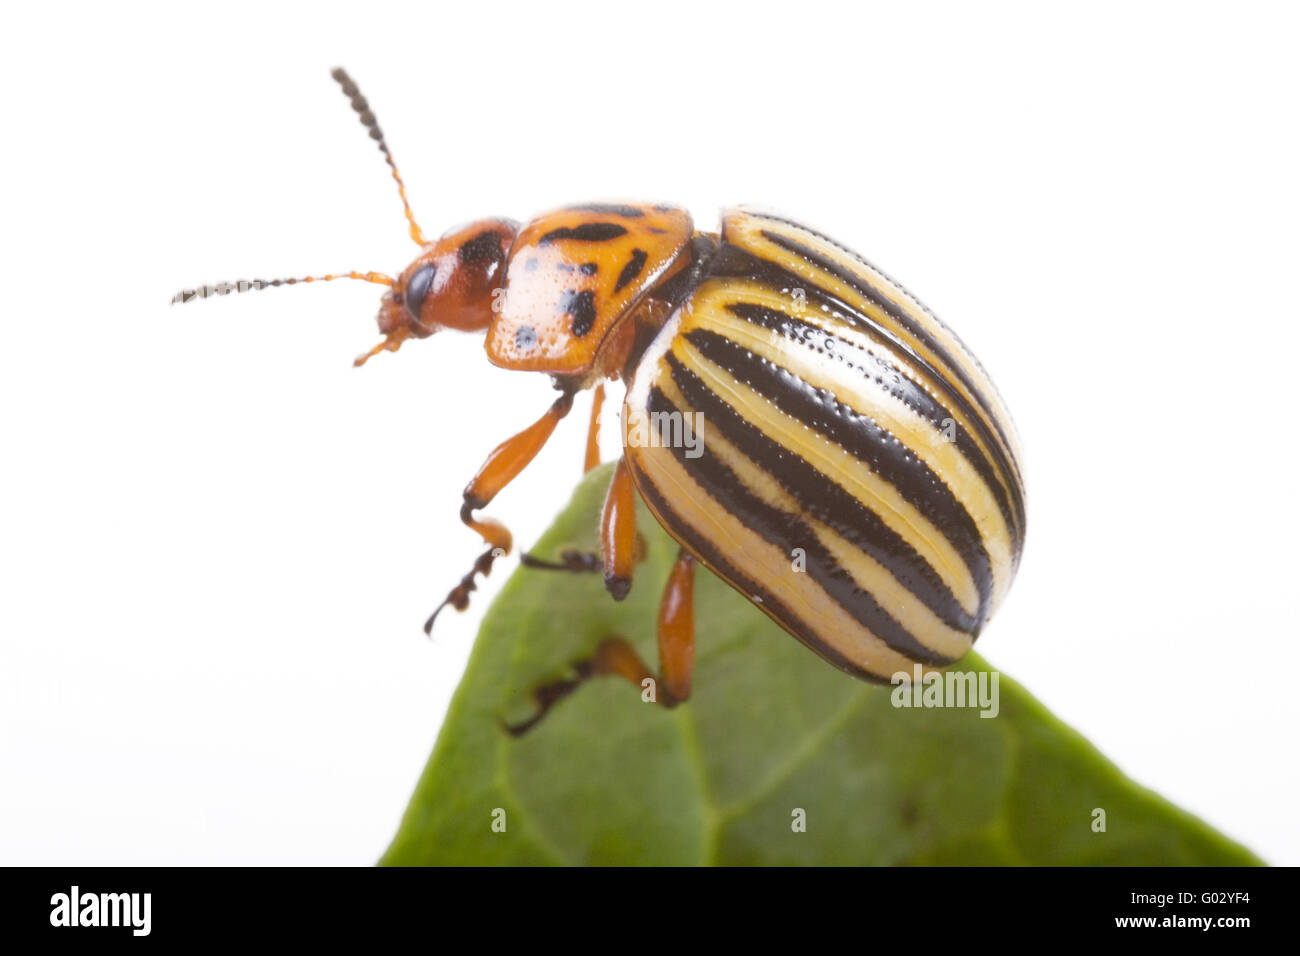 potato beetle (Leptinotarsa decemlineata) Stock Photo